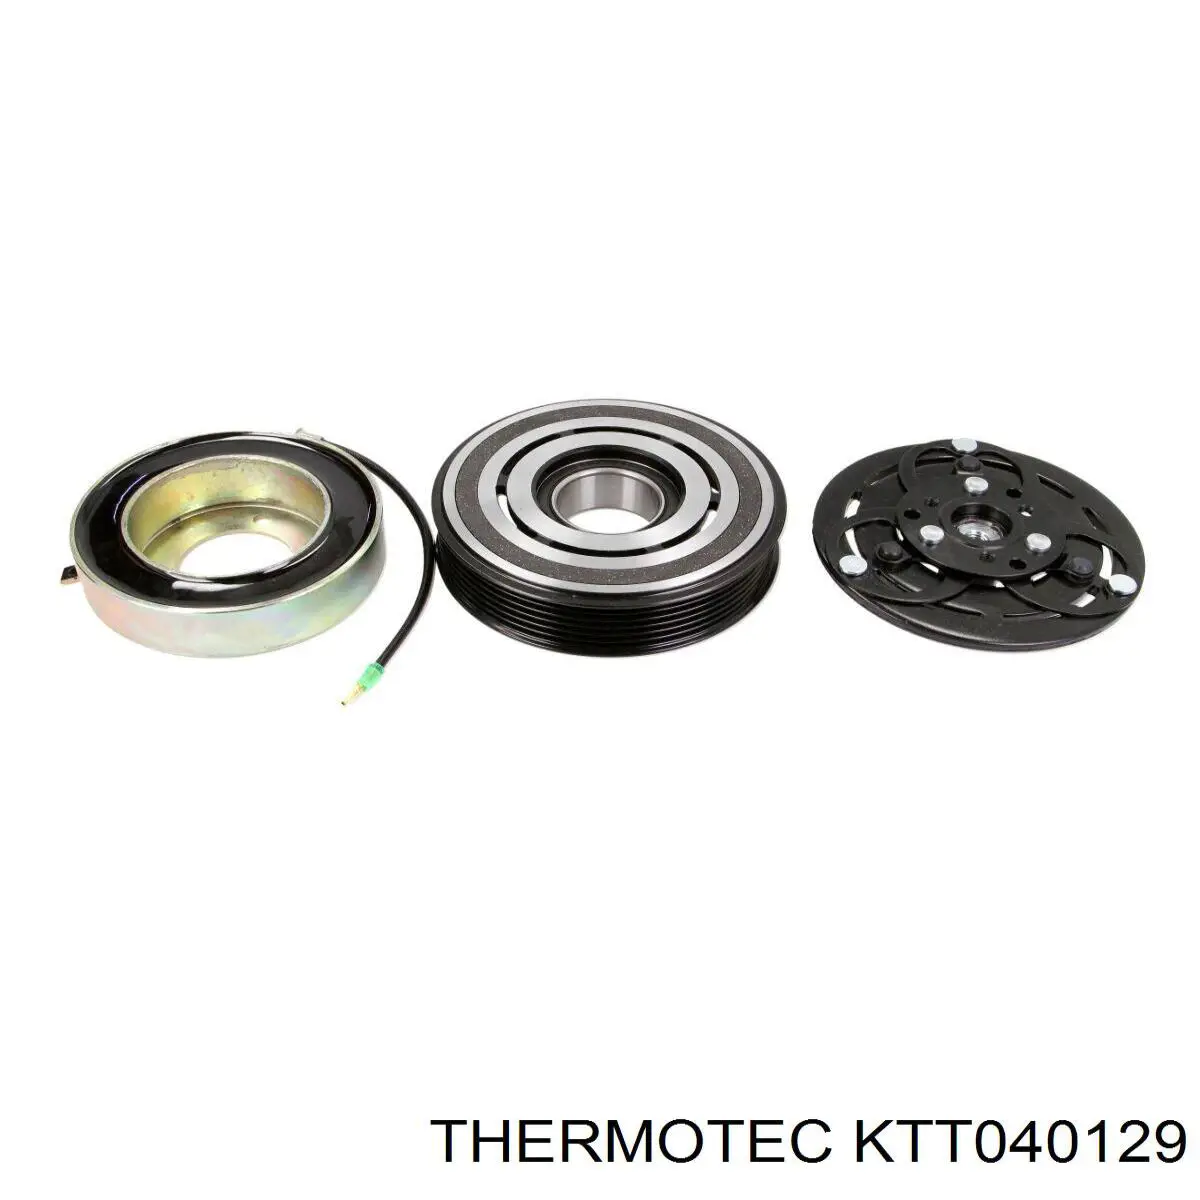 KTT040129 Thermotec compresor de aire acondicionado